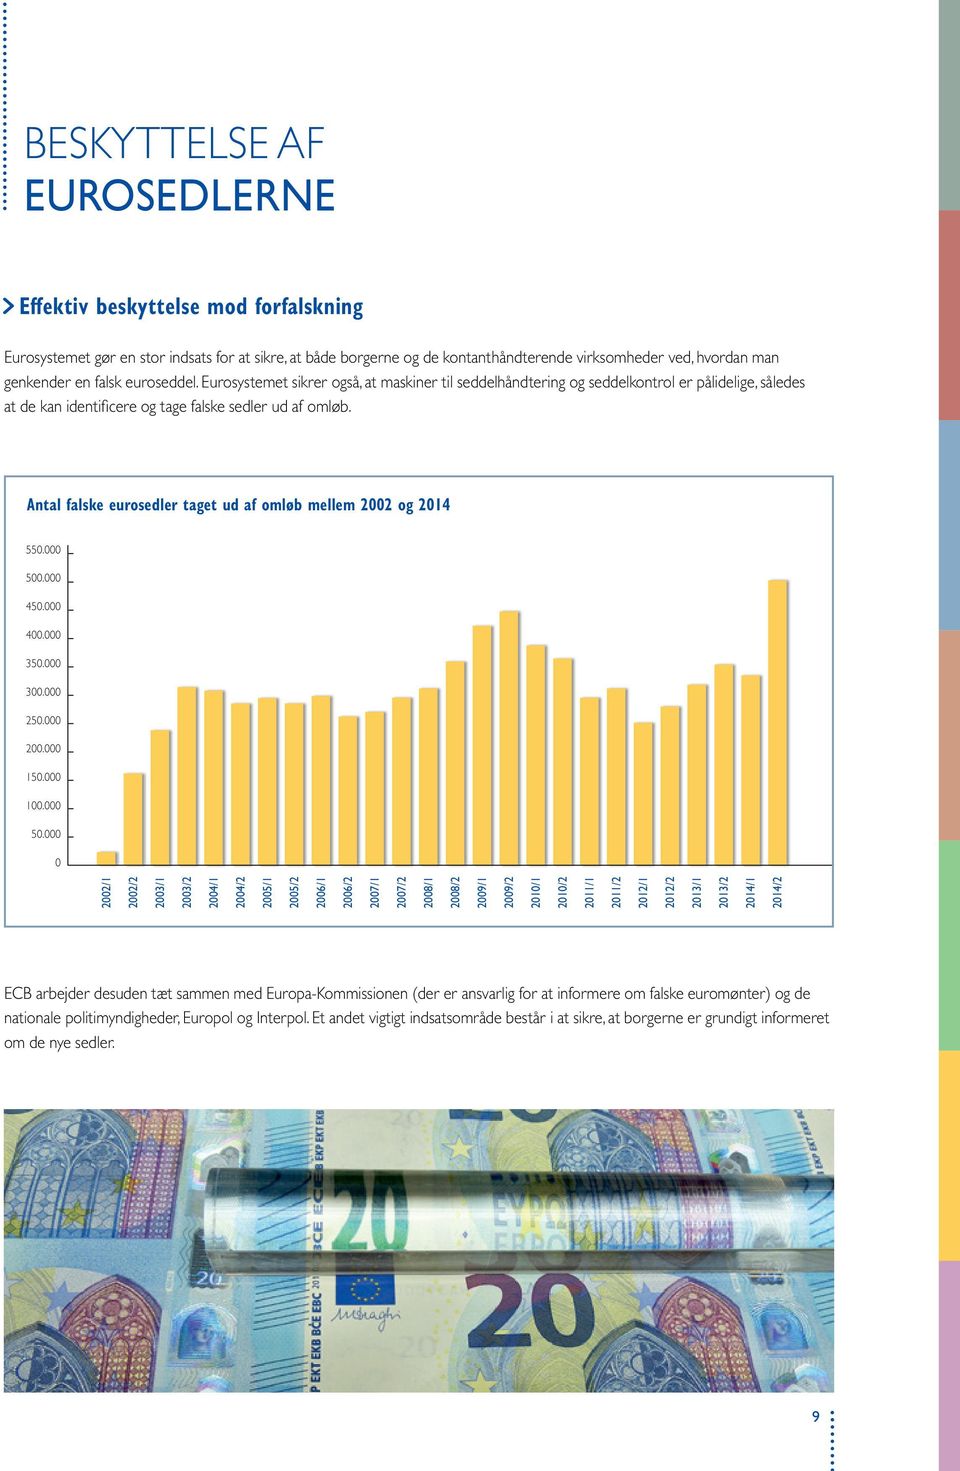 Antal falske eurosedler taget ud af omløb mellem 02 og 14 550.000 500